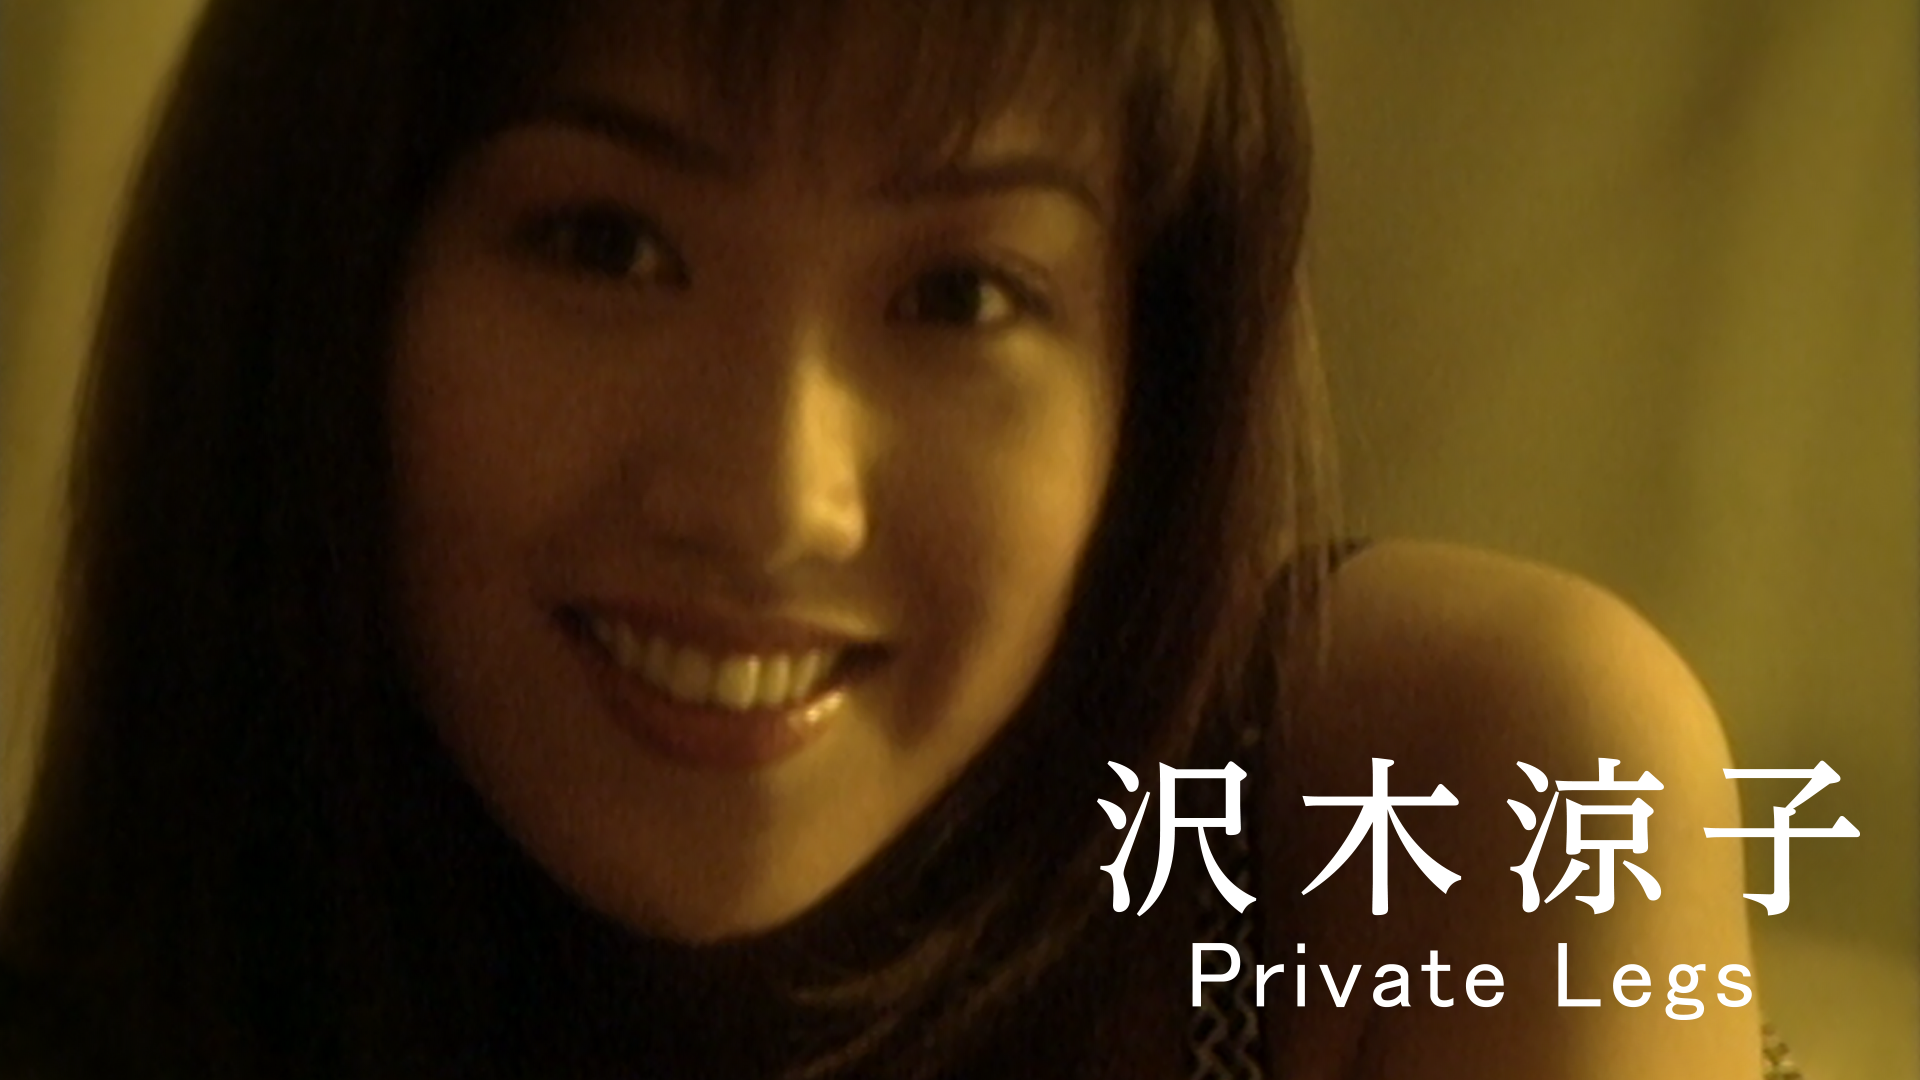 沢木涼子『Private Legs』(その他♡ / 1998) - 動画配信 | U-NEXT 31日間無料トライアル